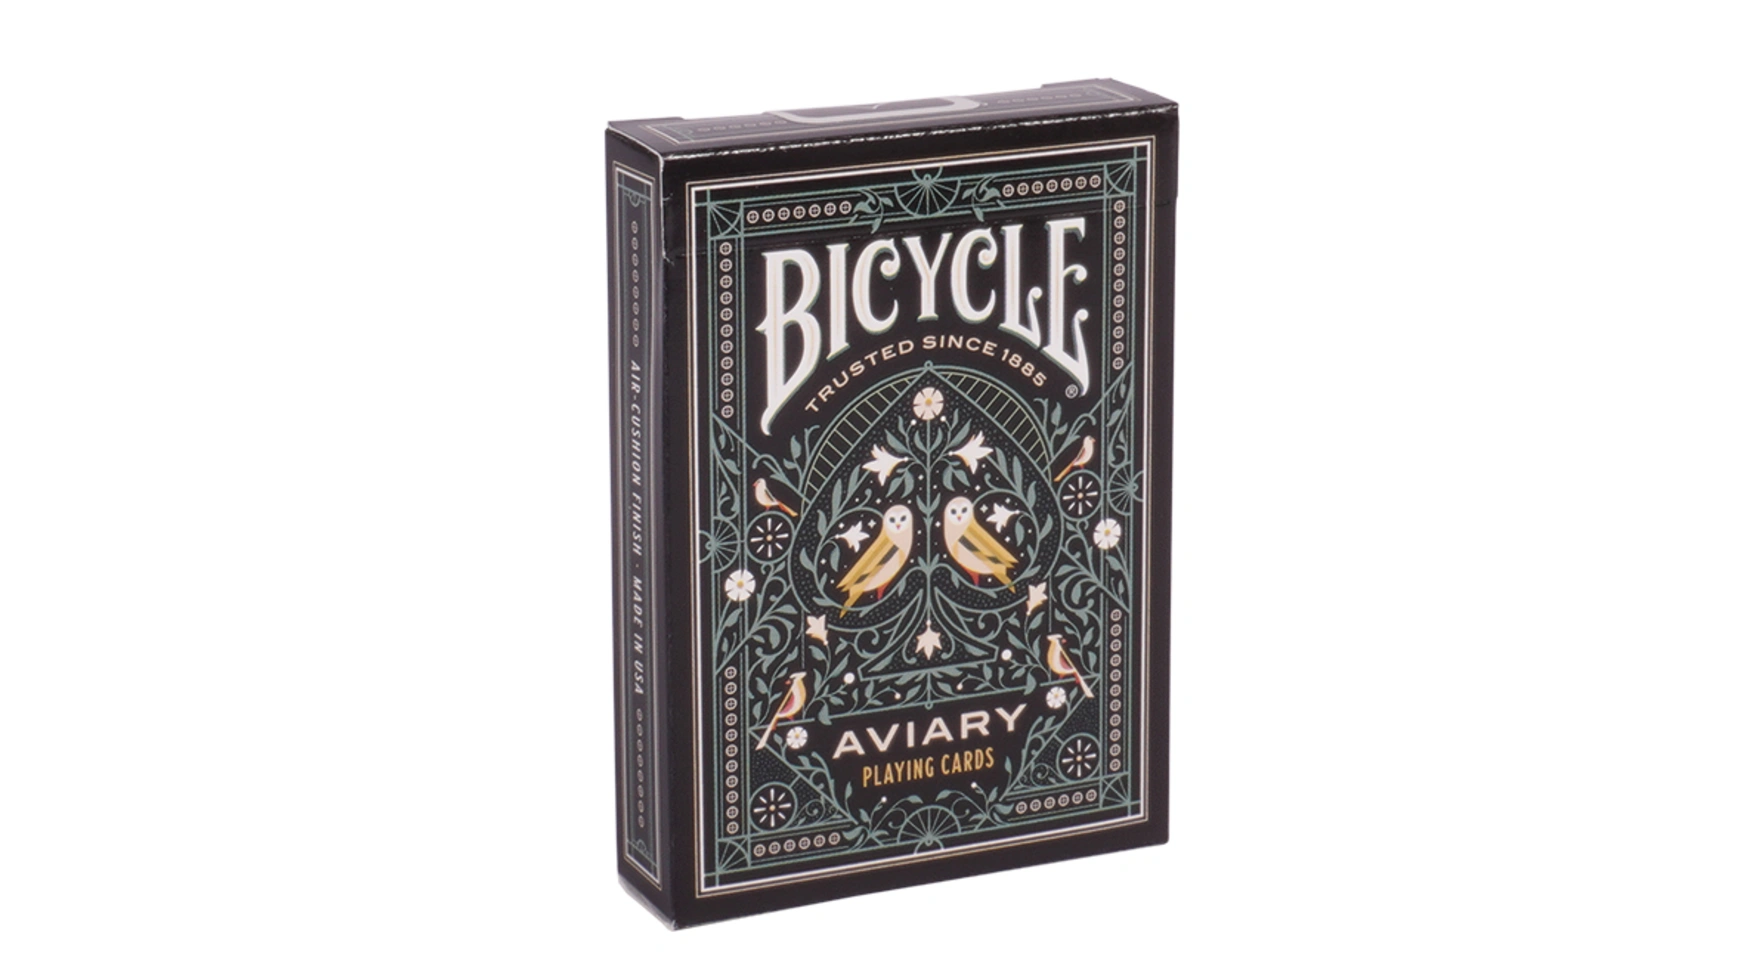 Bicycle Вольер, игральные карты uspcc игральные карты bicycle pro poker peek uspcc сша 54 карты